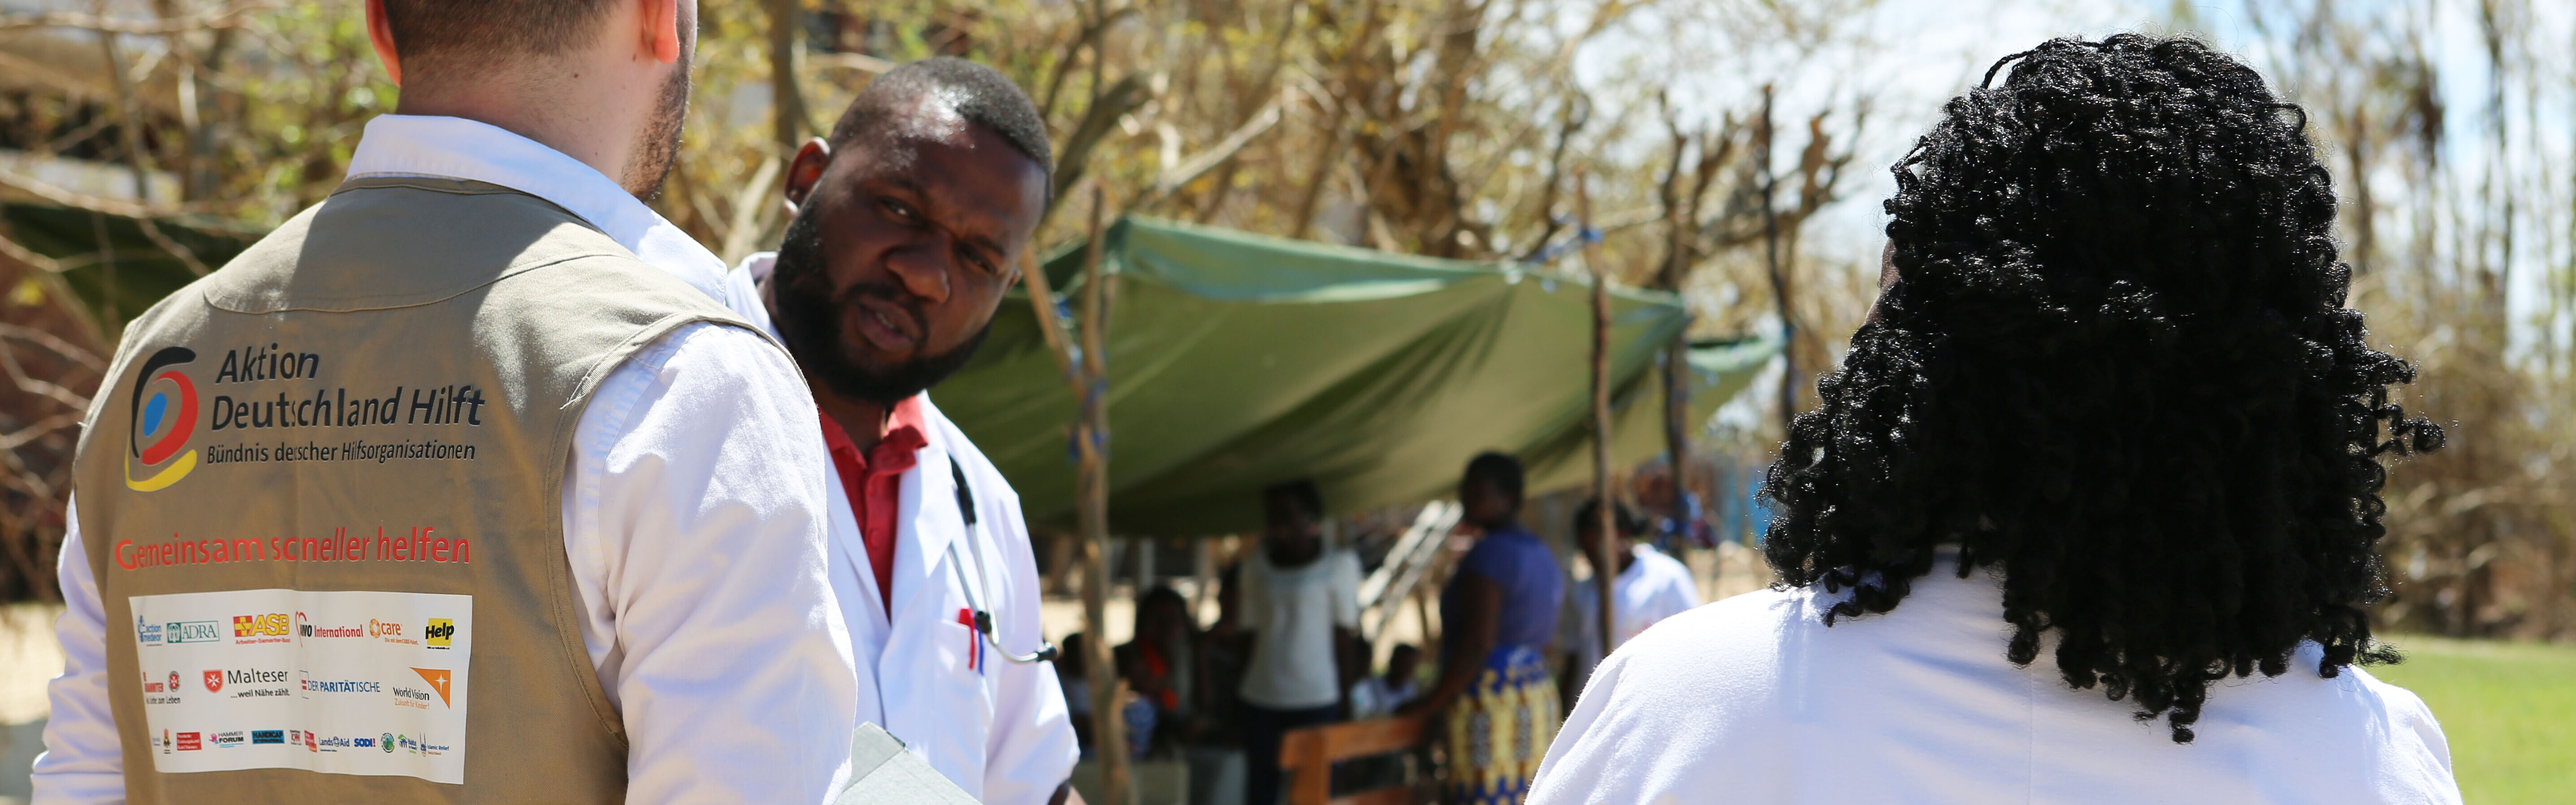 Unsere Bündnisorganisation action medeor hilft in Mosambik mit Medikamenten.